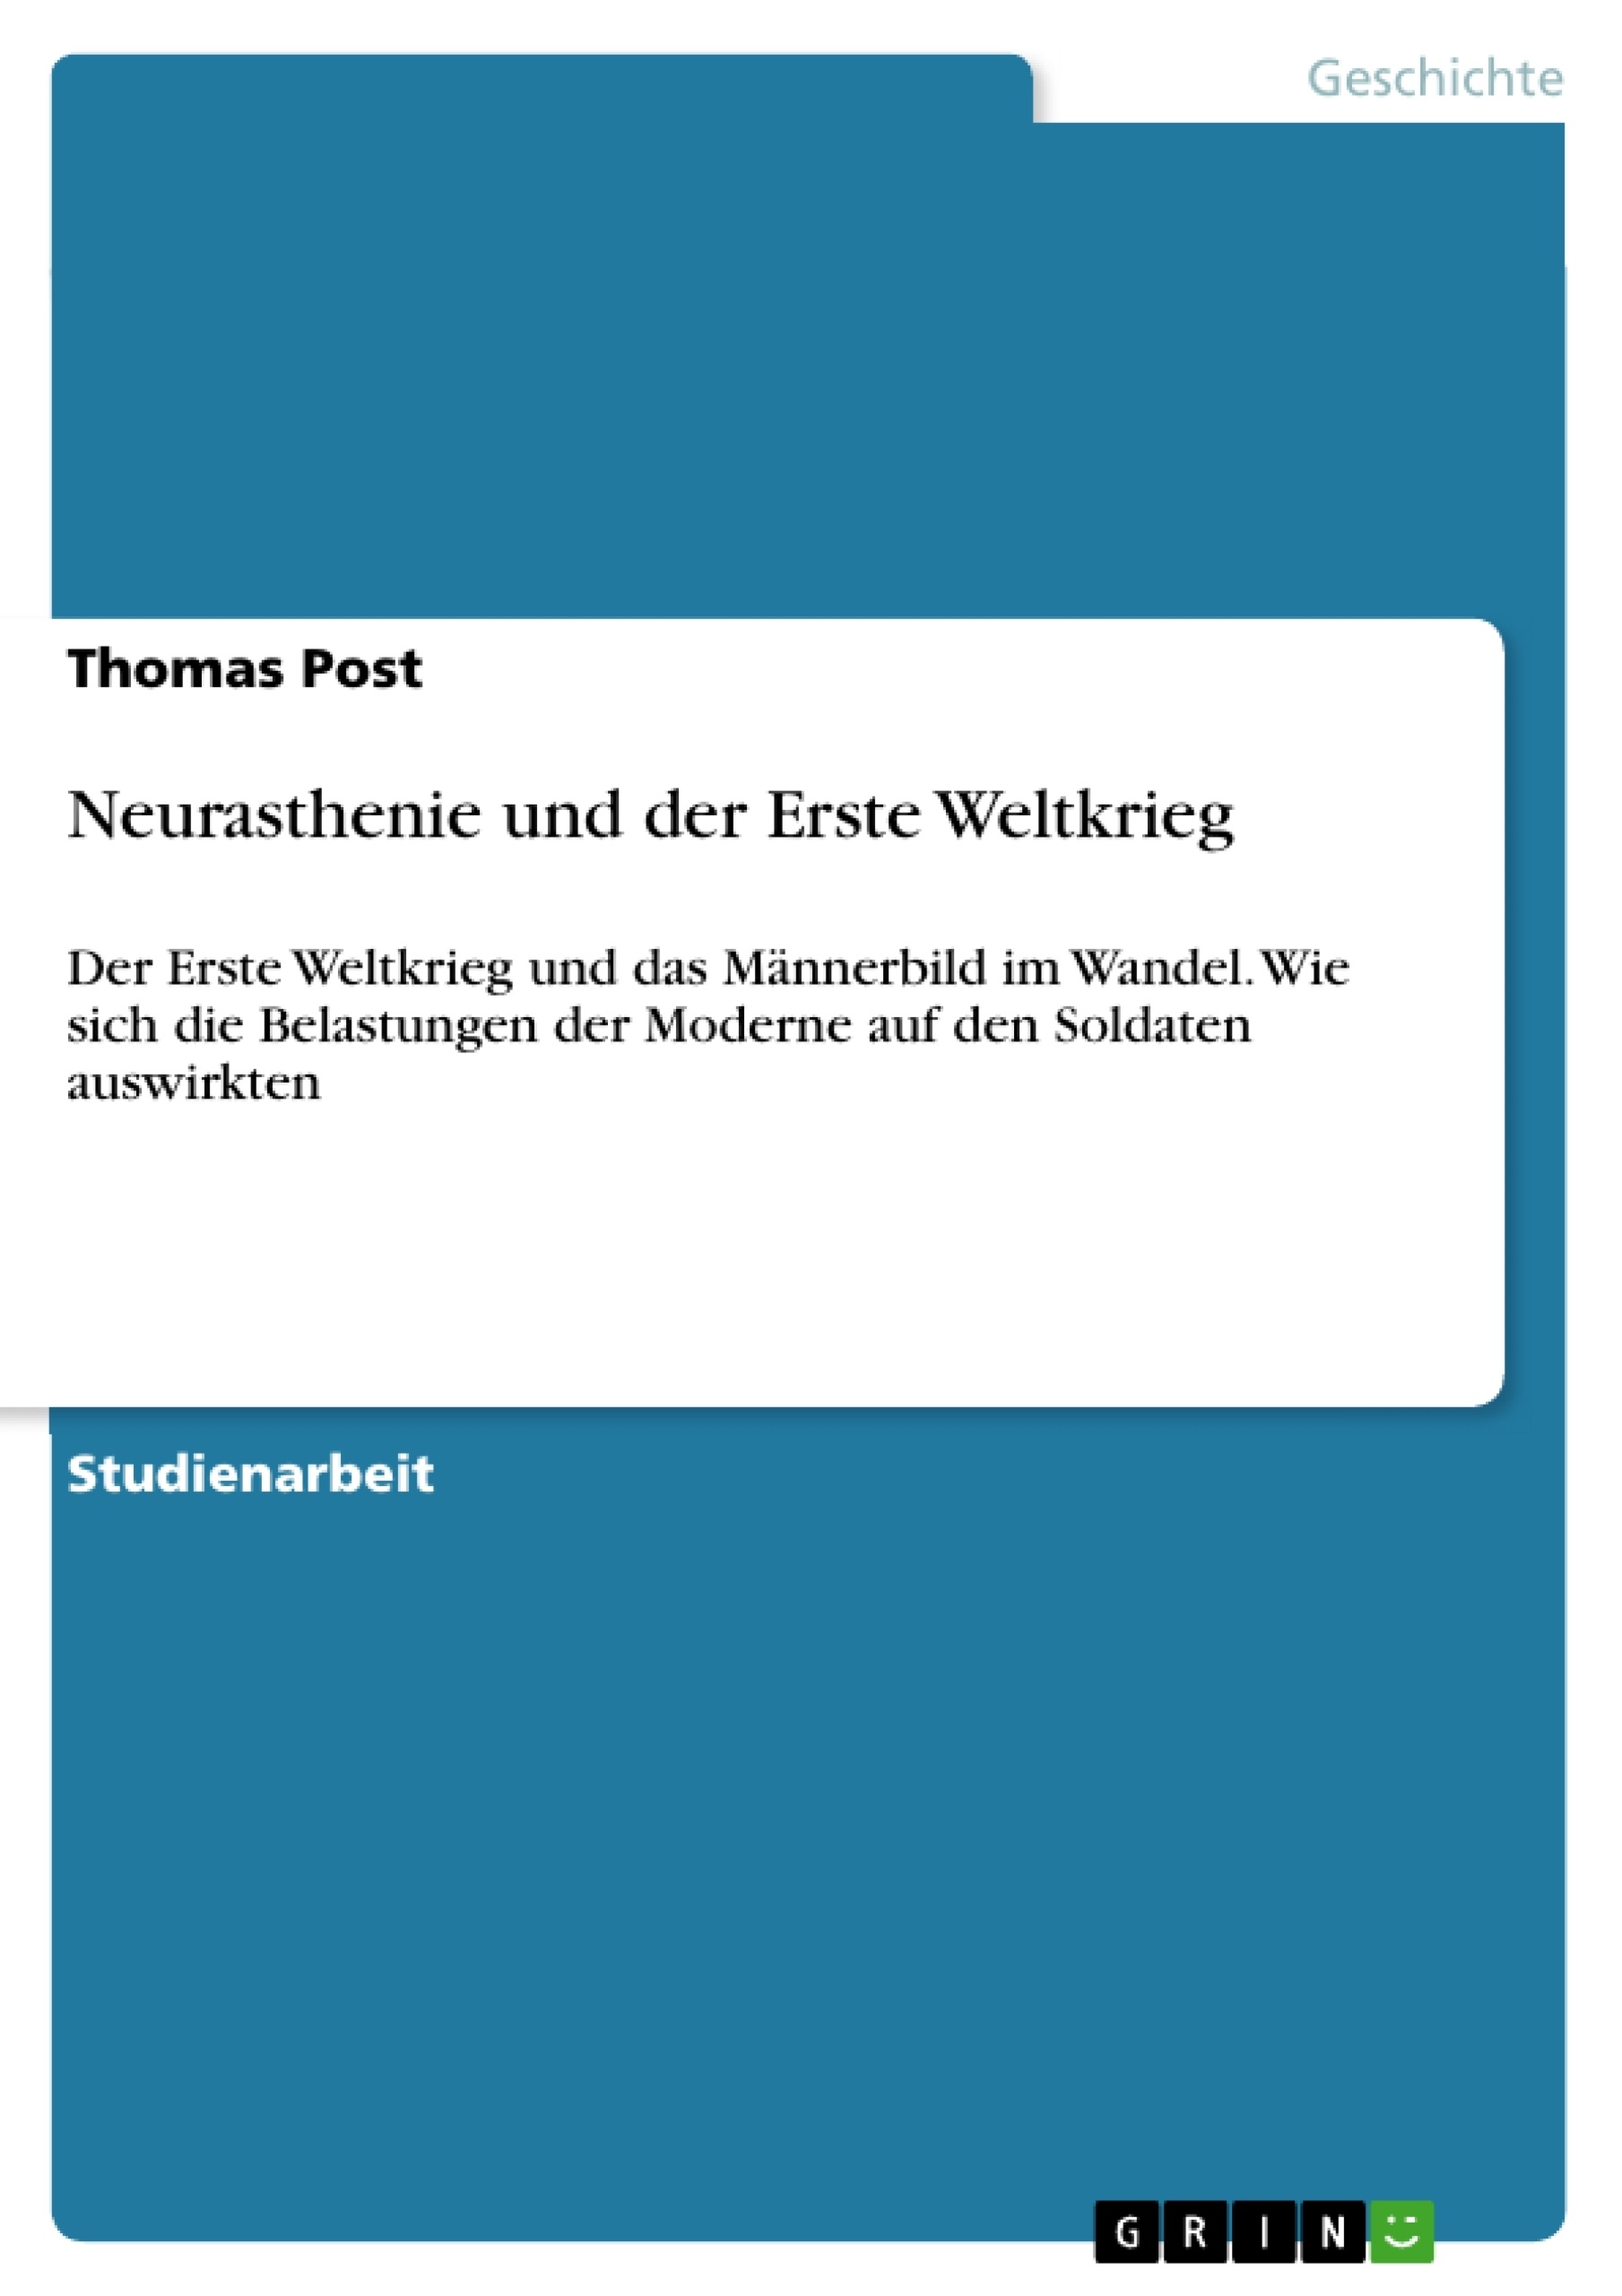 Title: Neurasthenie und der Erste Weltkrieg